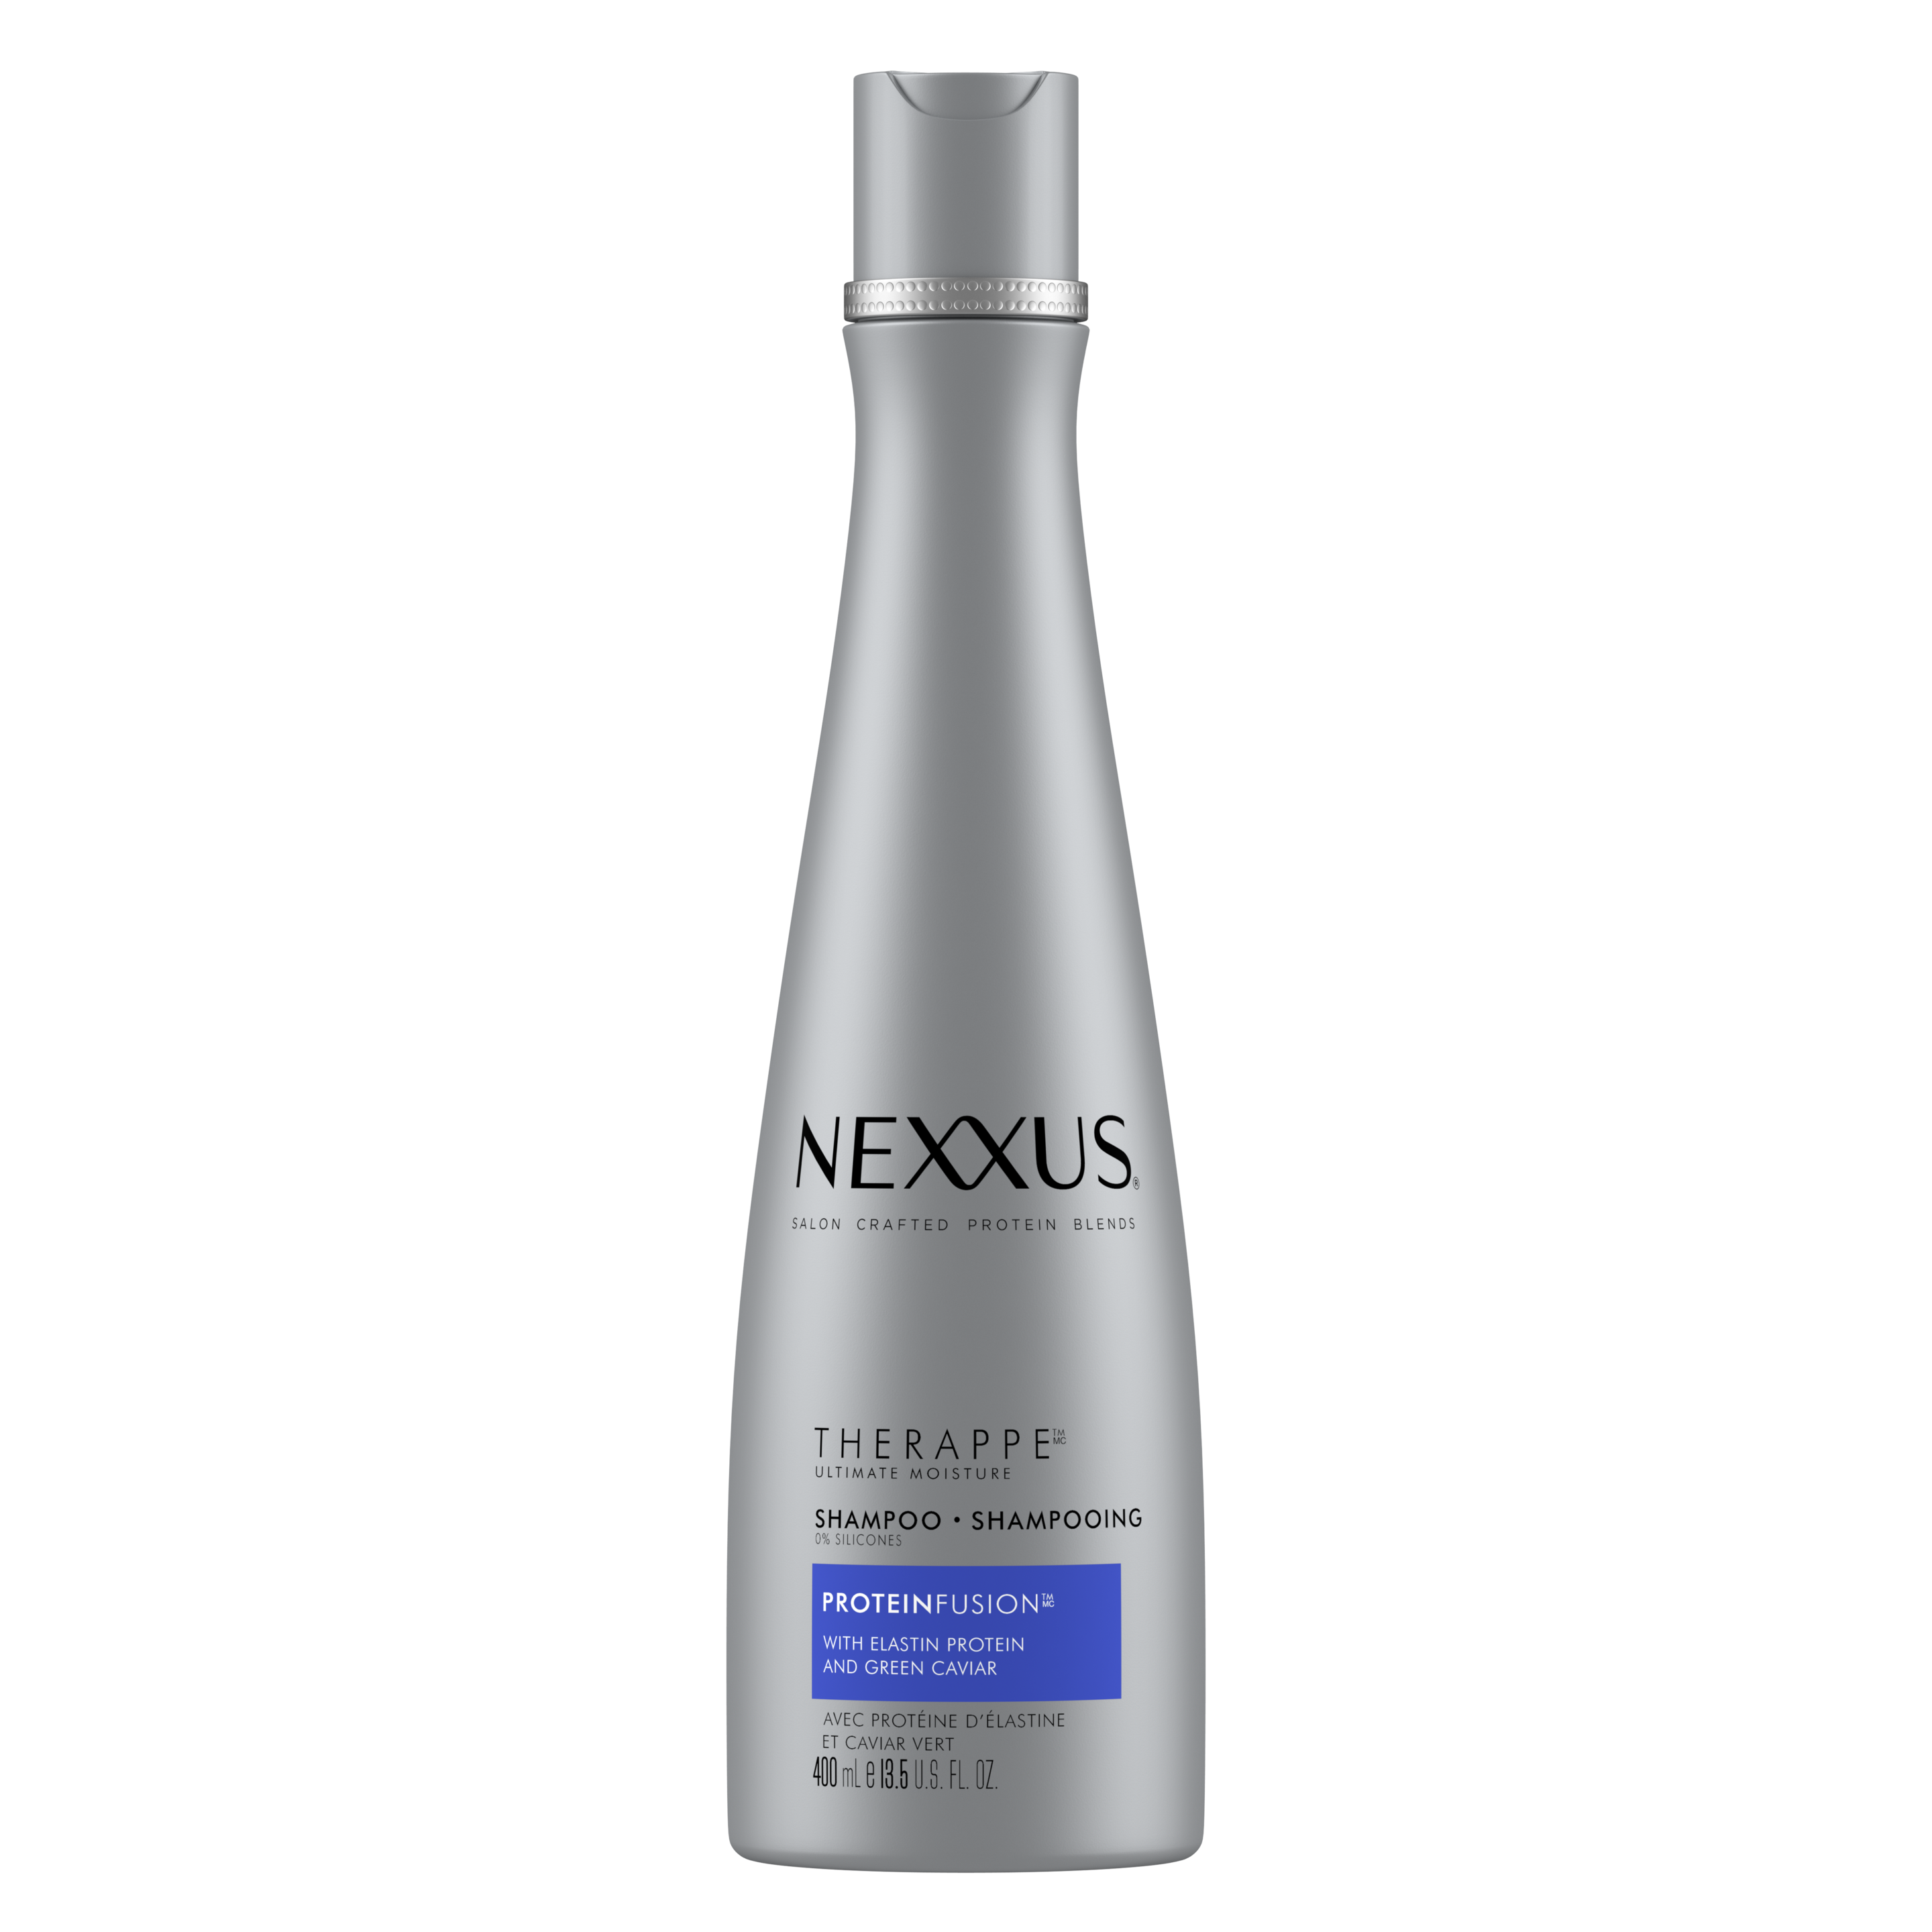 Face de l'emballage du shampooing Therappe pour cheveux secs de Nexxus 400 ml